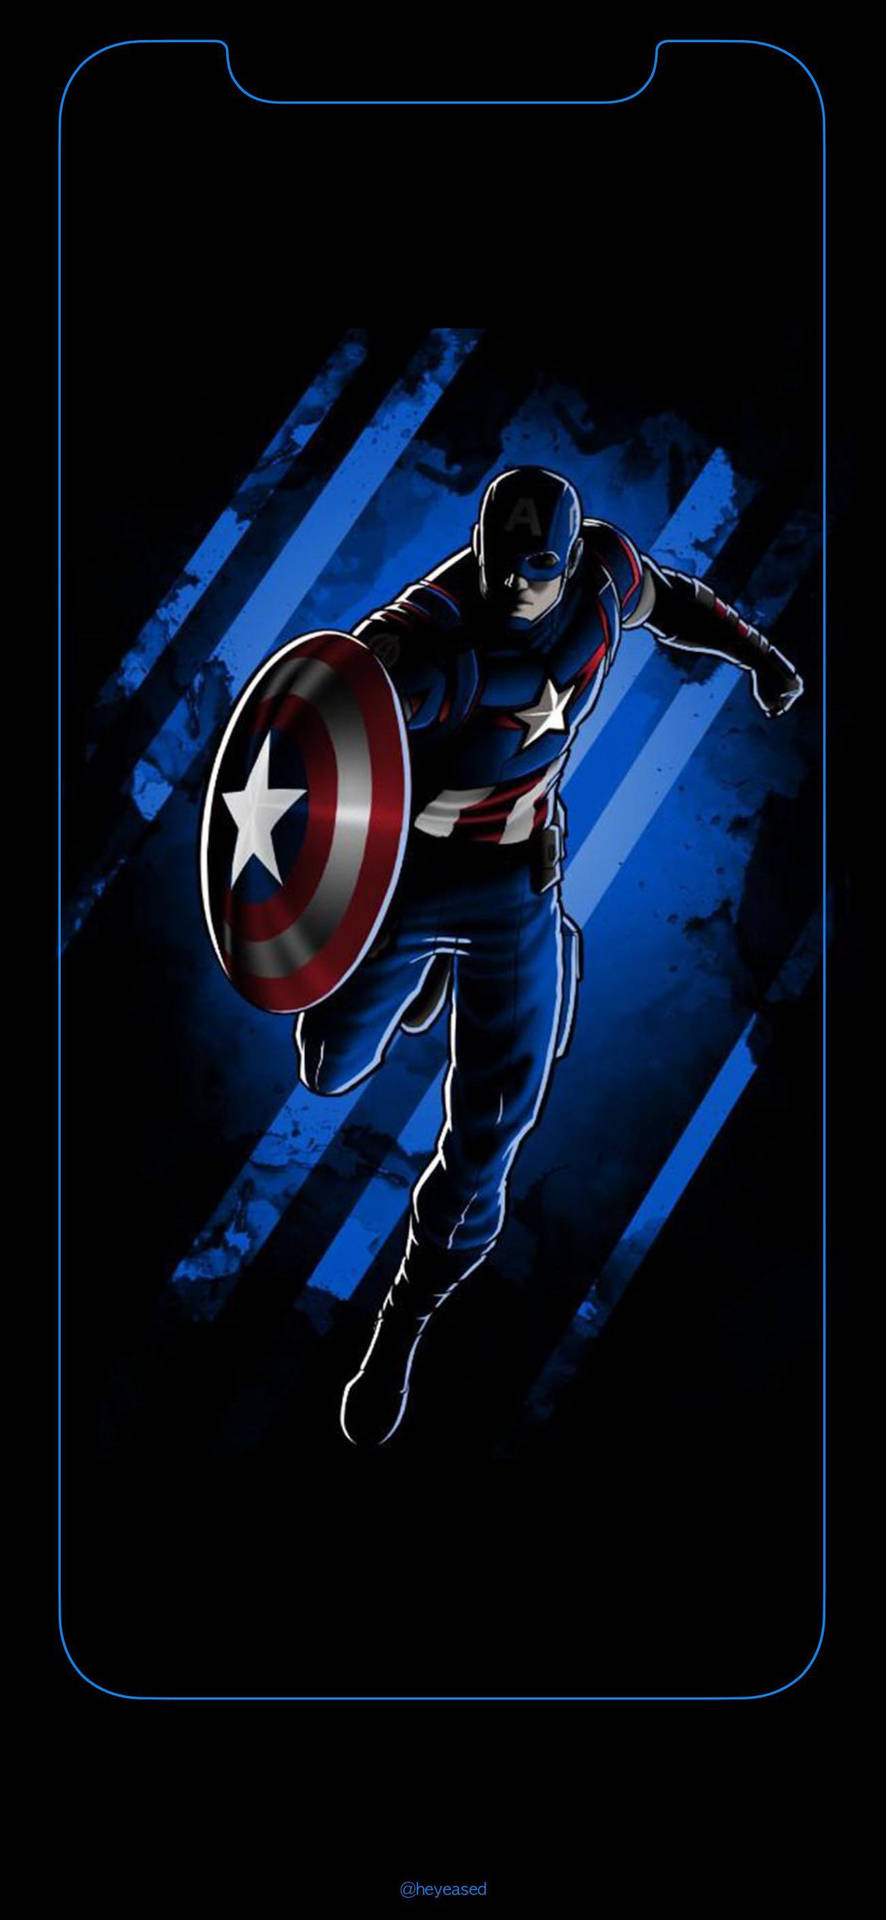 Fondode Pantalla Para Iphone De Captain America En Azul Y Negro. Fondo de pantalla